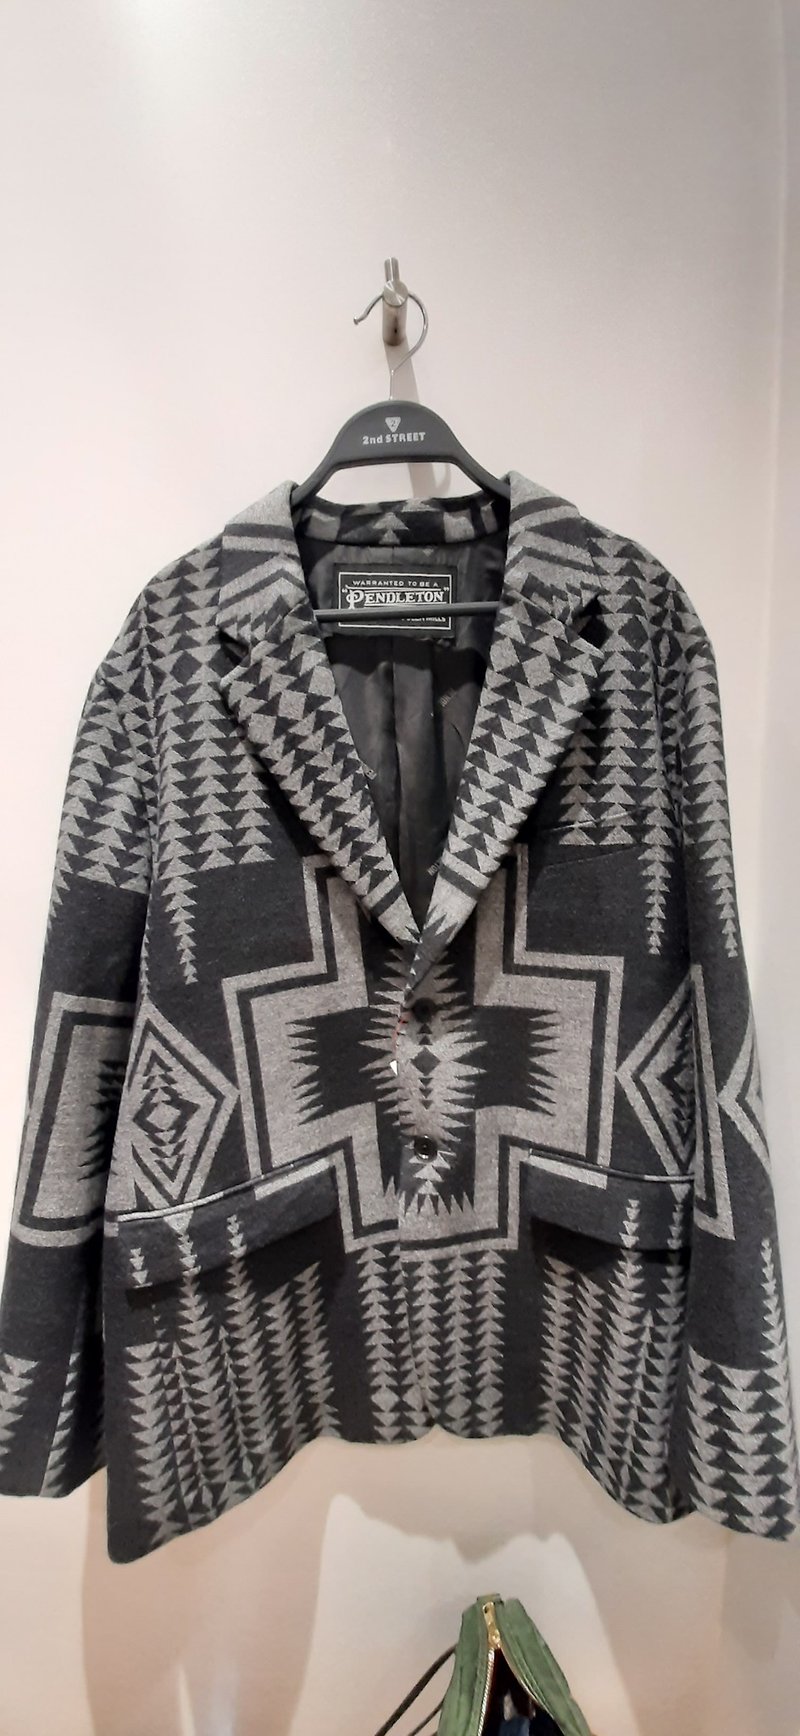 日本製pendleton印地安羊毛休閒外套 限定選物 - 西裝外套 - 羊毛 灰色